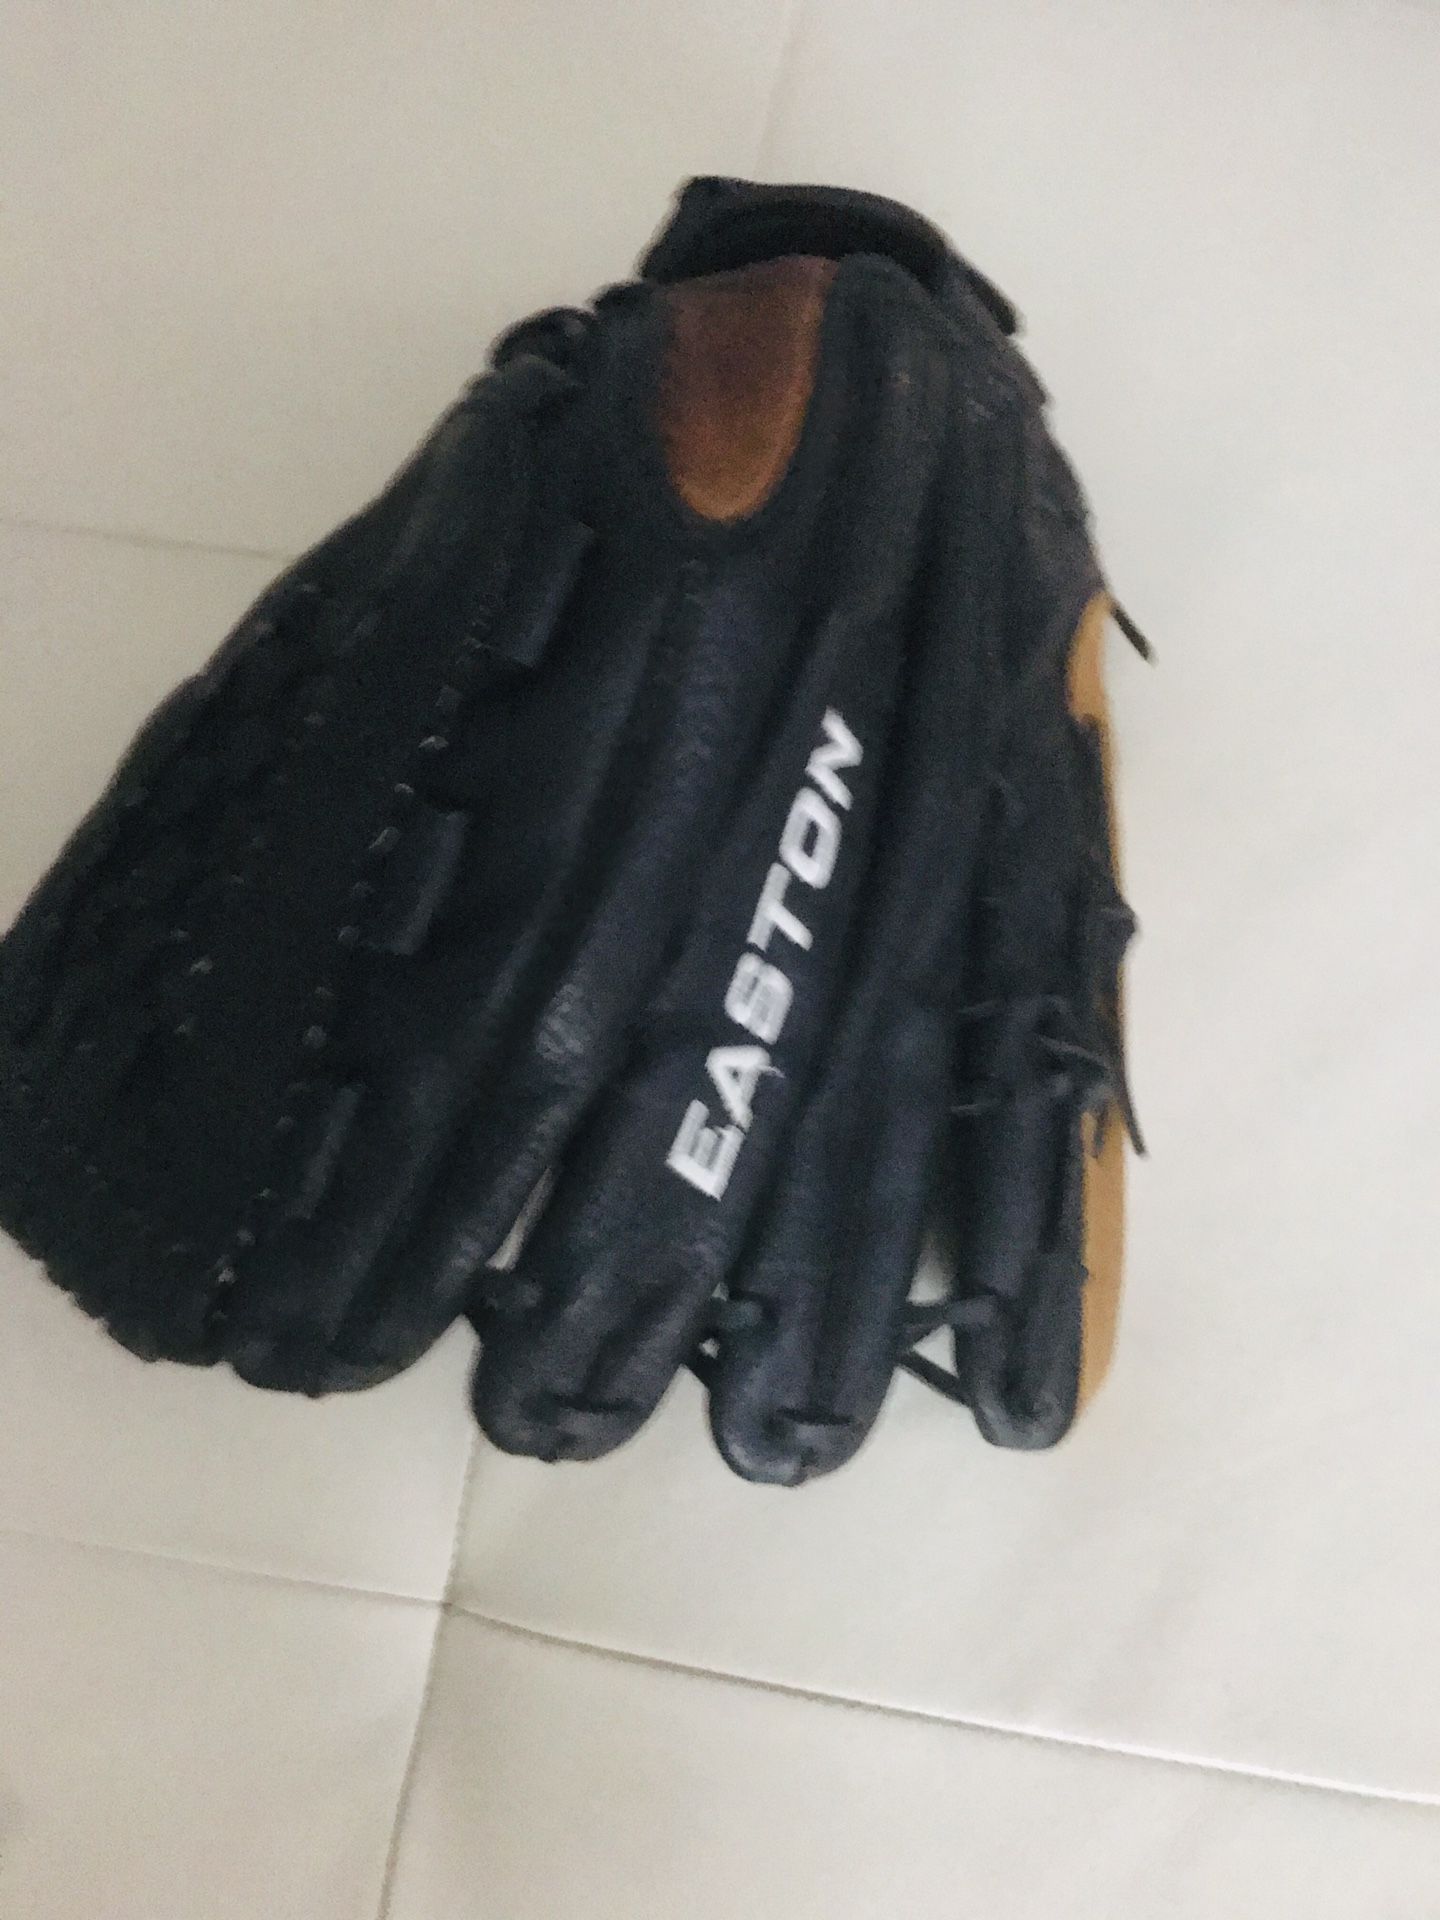 Baseball glove 14” left